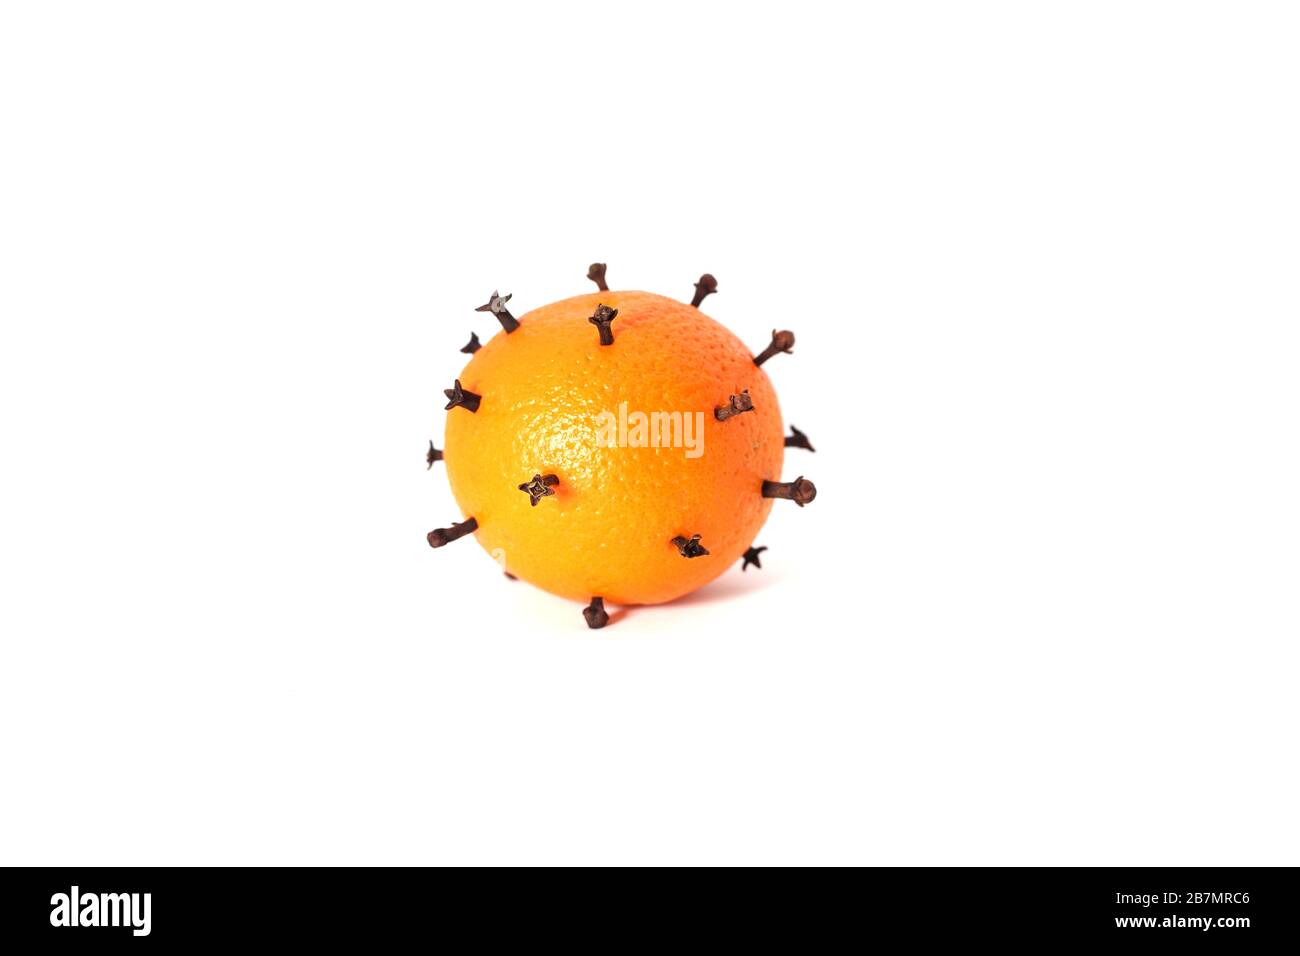 Orangefarbene Früchte stachelten mit Nelken, die wie ein Corona-Virus aussehen Stockfoto